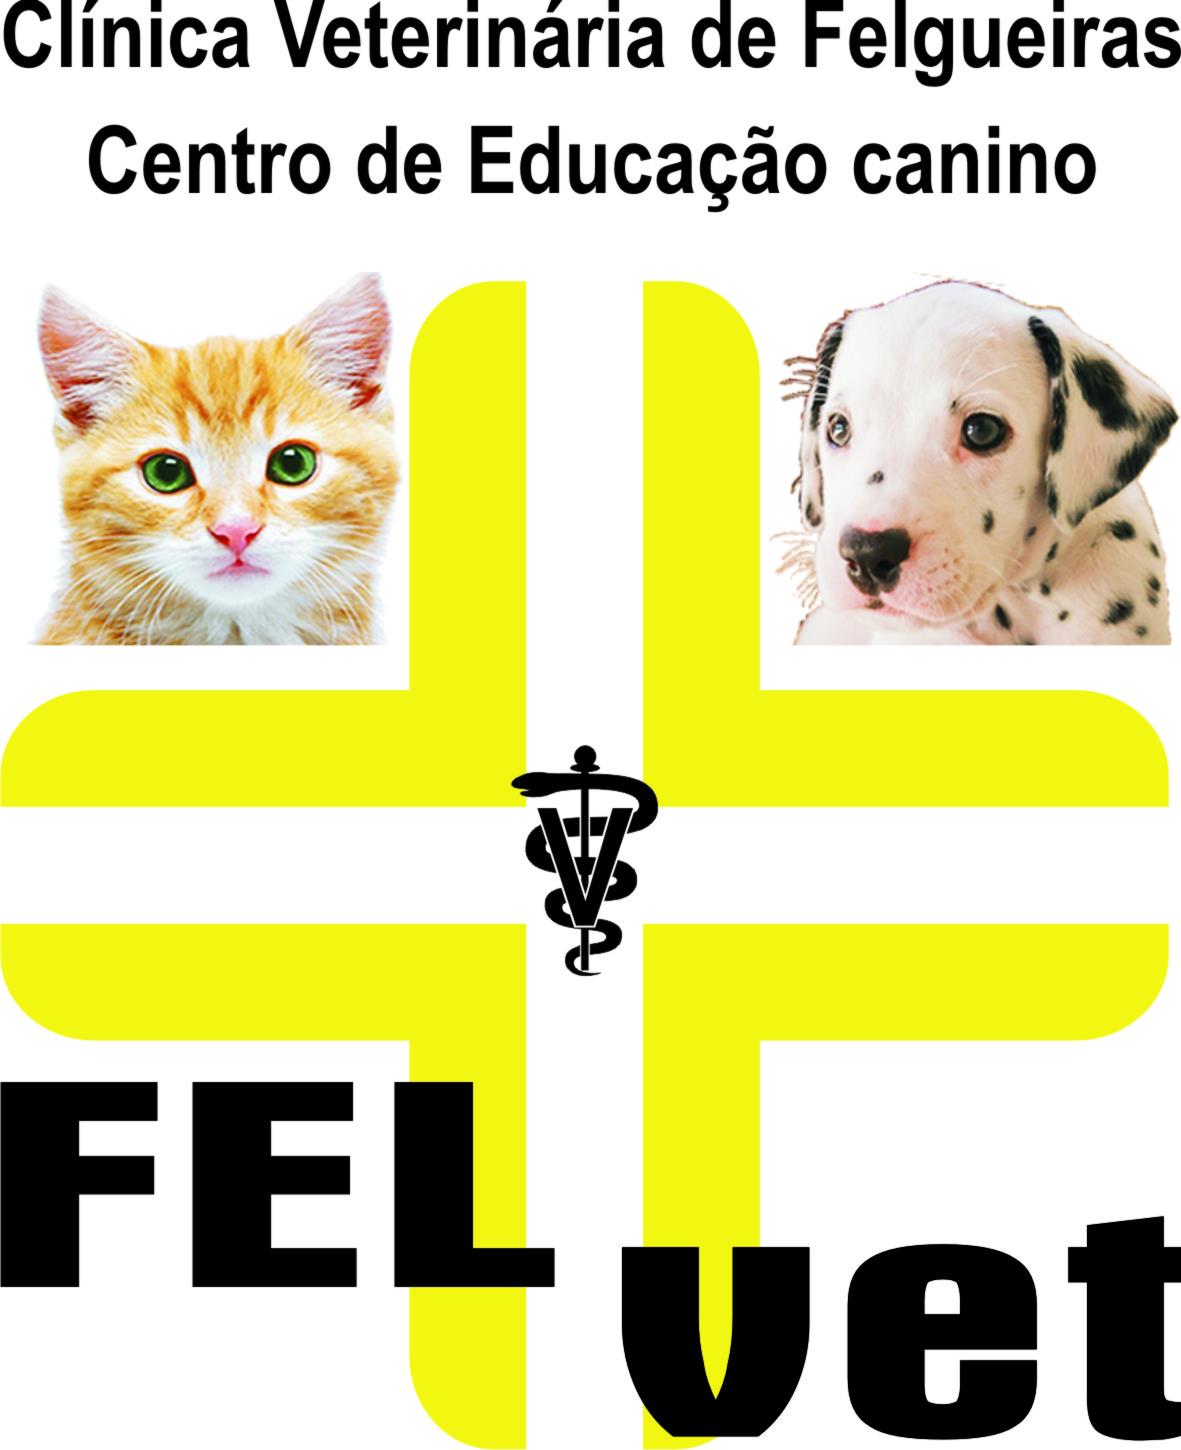 FelVet - C. Vet. de Felgueiras